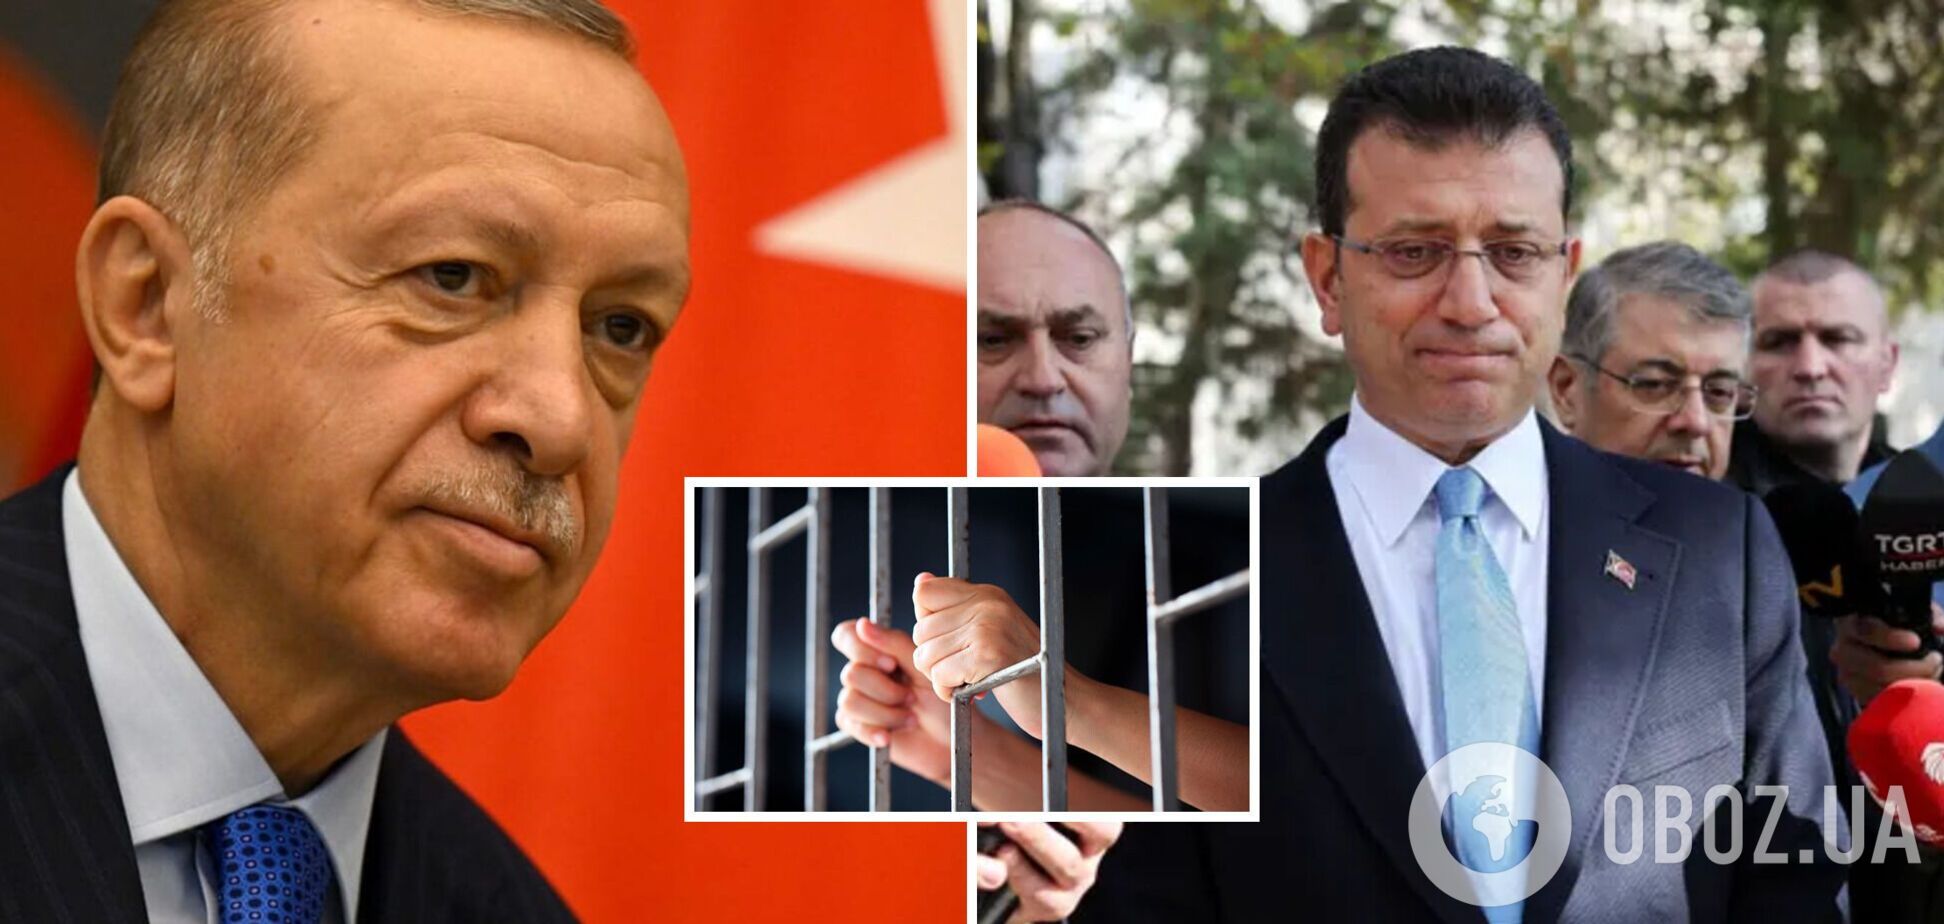 Мэр Стамбула, которого считают главным оппонентом Эрдогана, приговорен к 2,5 годам заключения